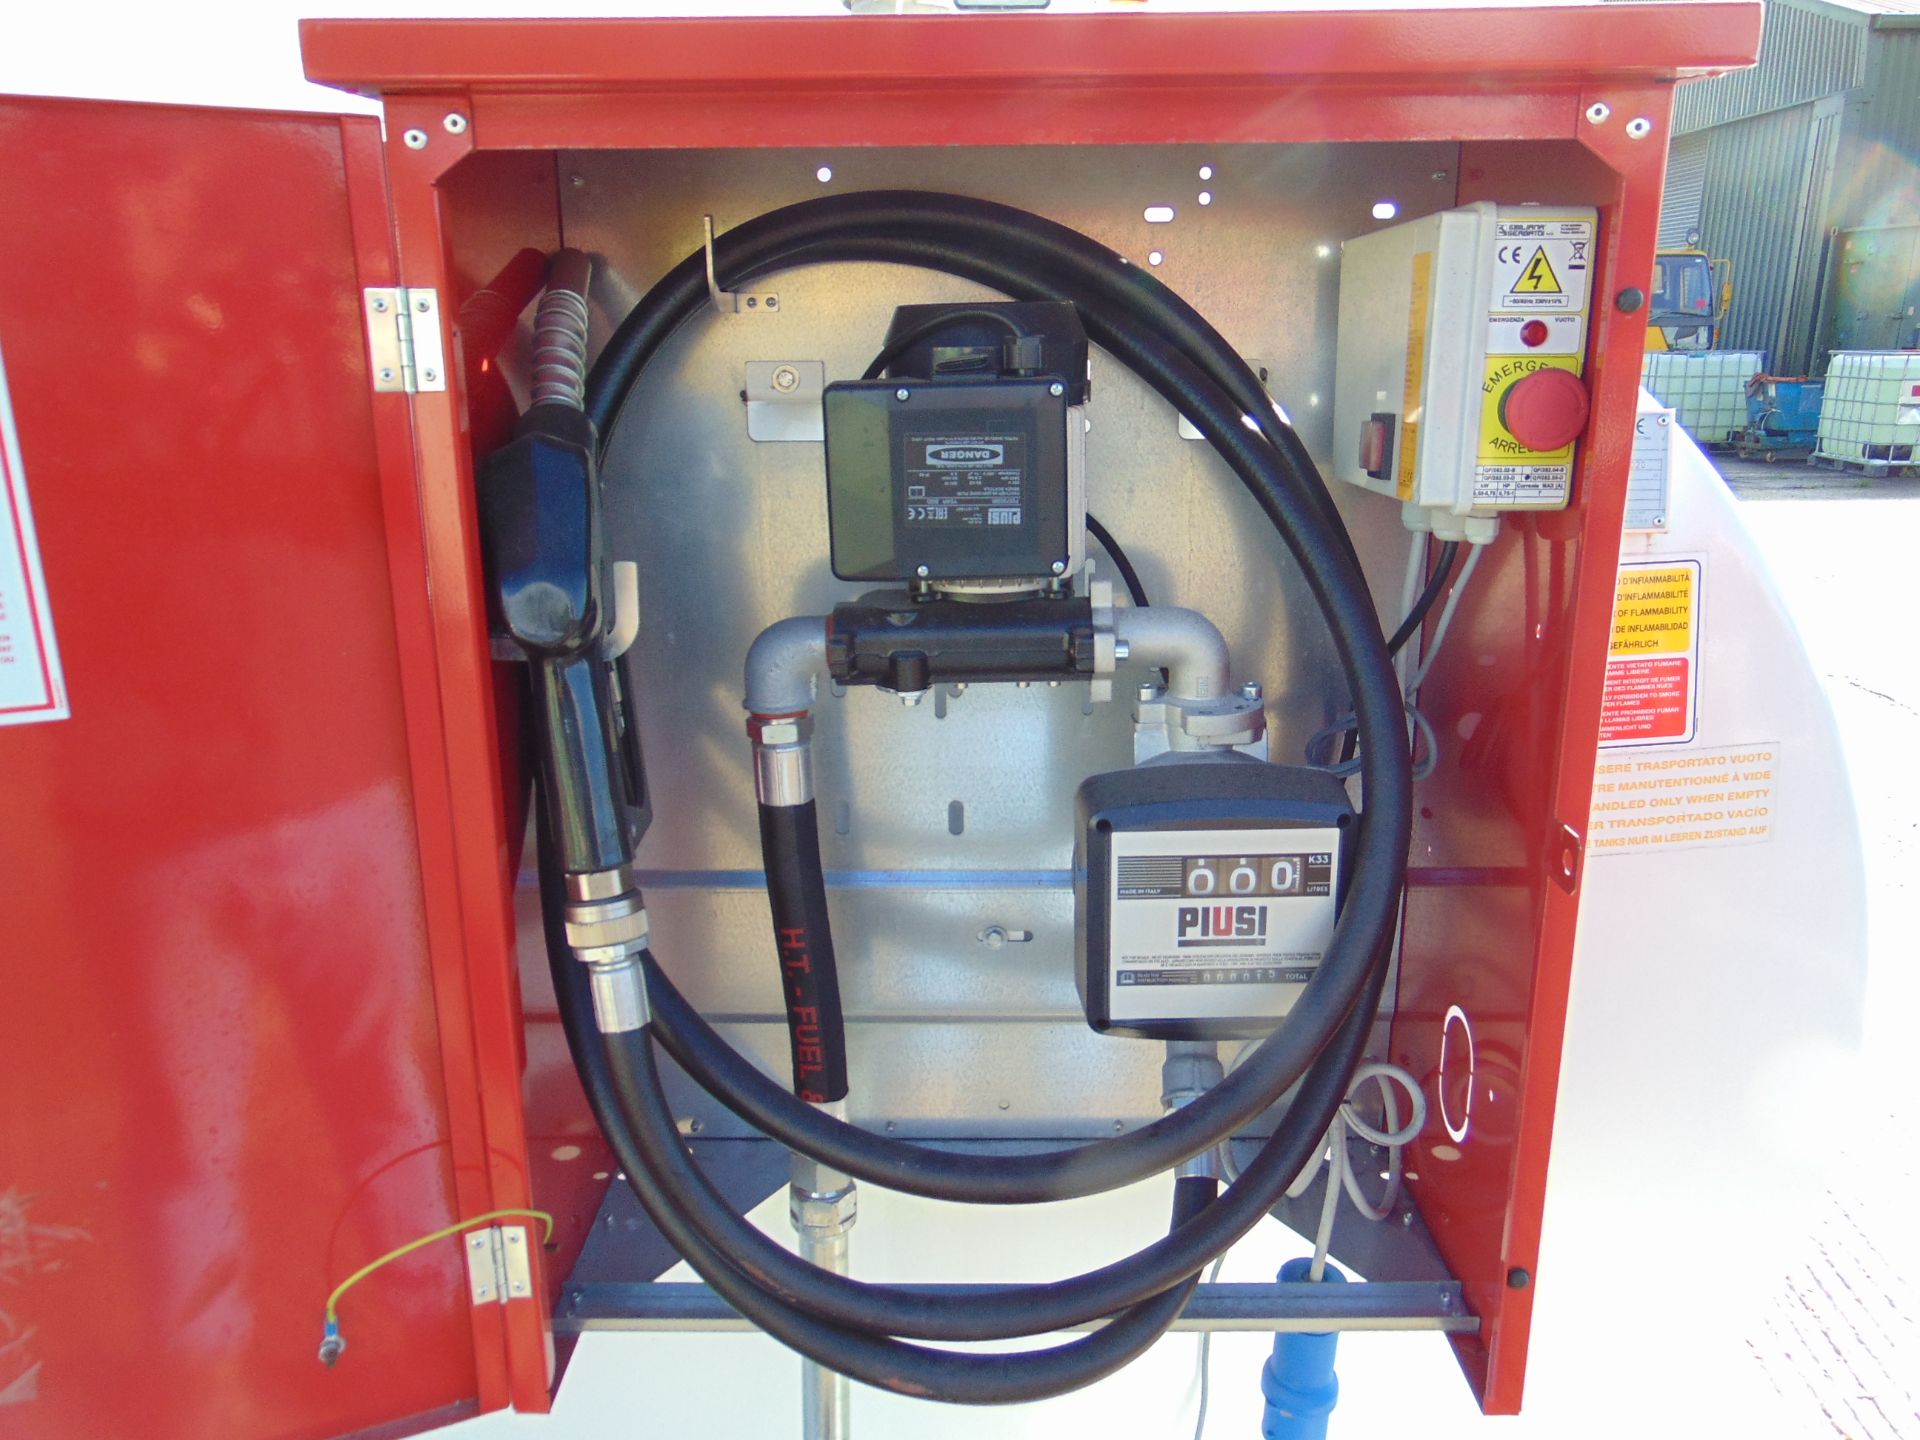 2020 Emiliani Serbatoi 3172L bunded Static Fuel installation c/w 230 Volt Pump meter, hoses unused - Image 6 of 9